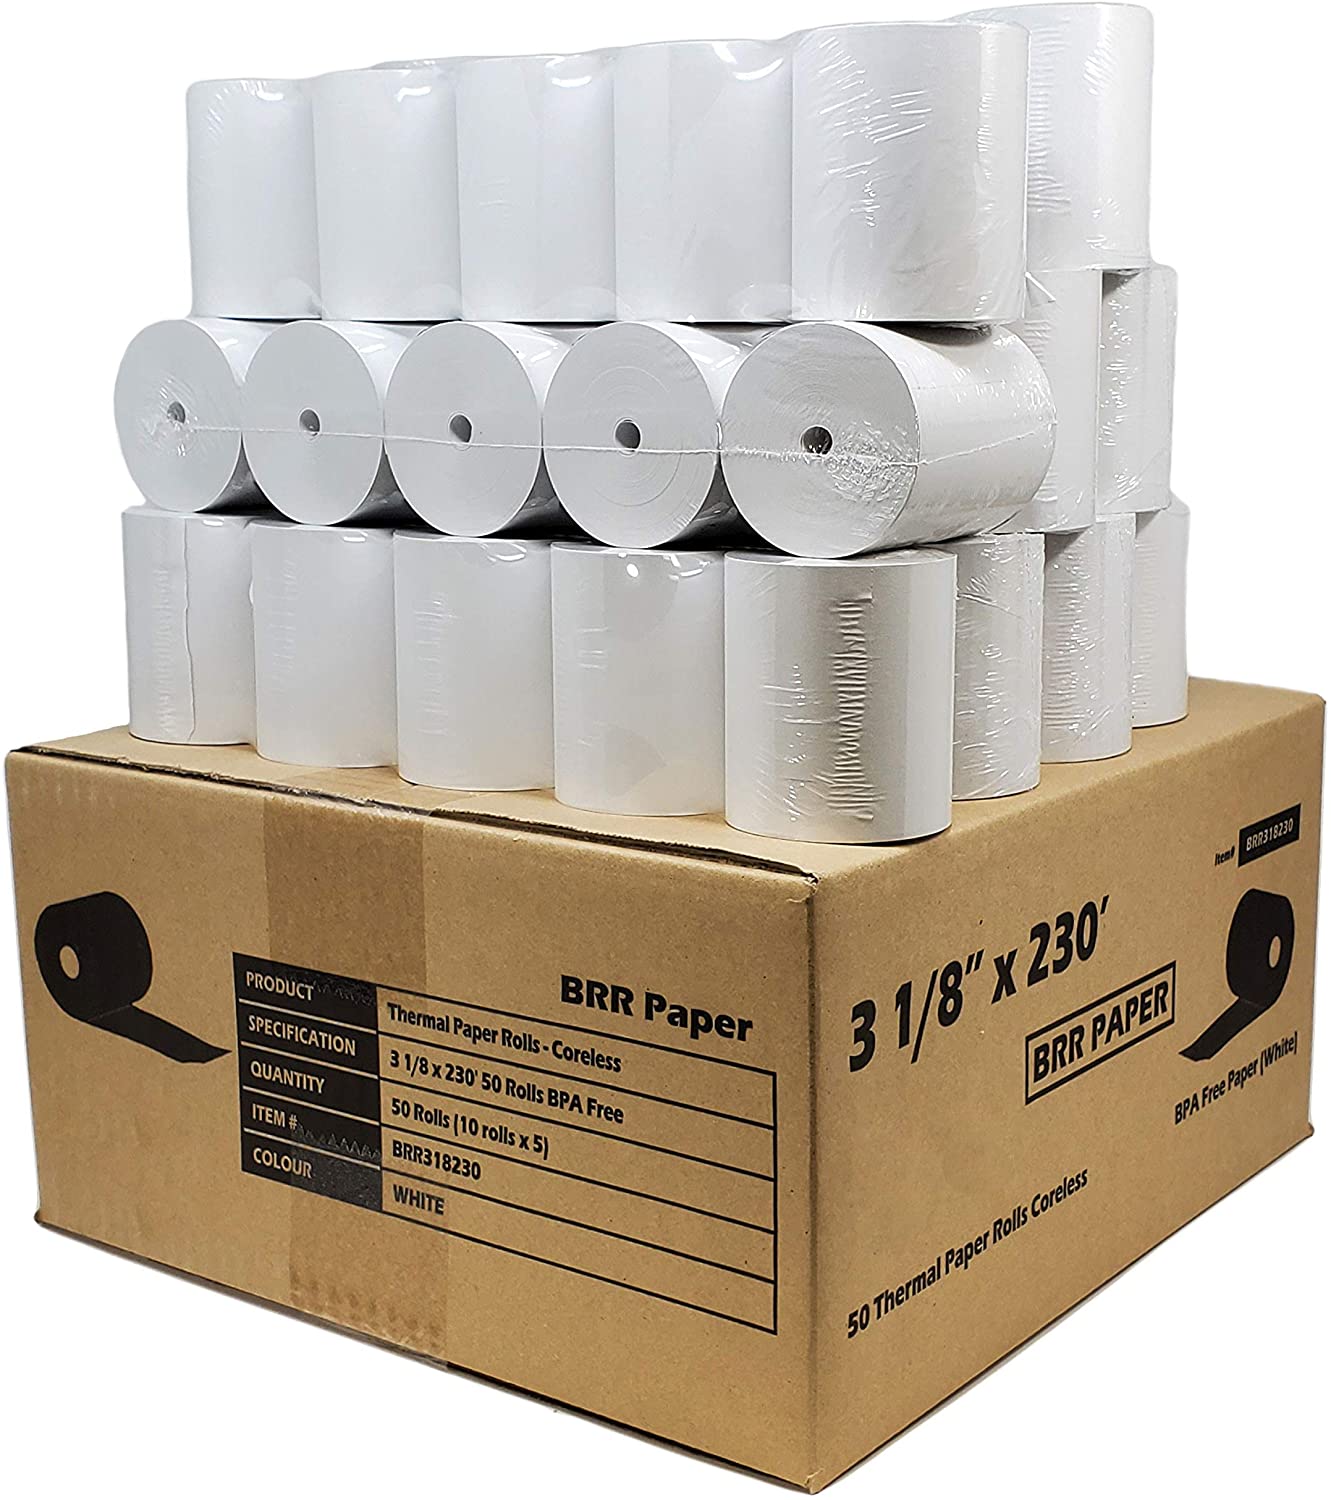 3 1/8 x 220' Thermal Receipt Paper Rolls